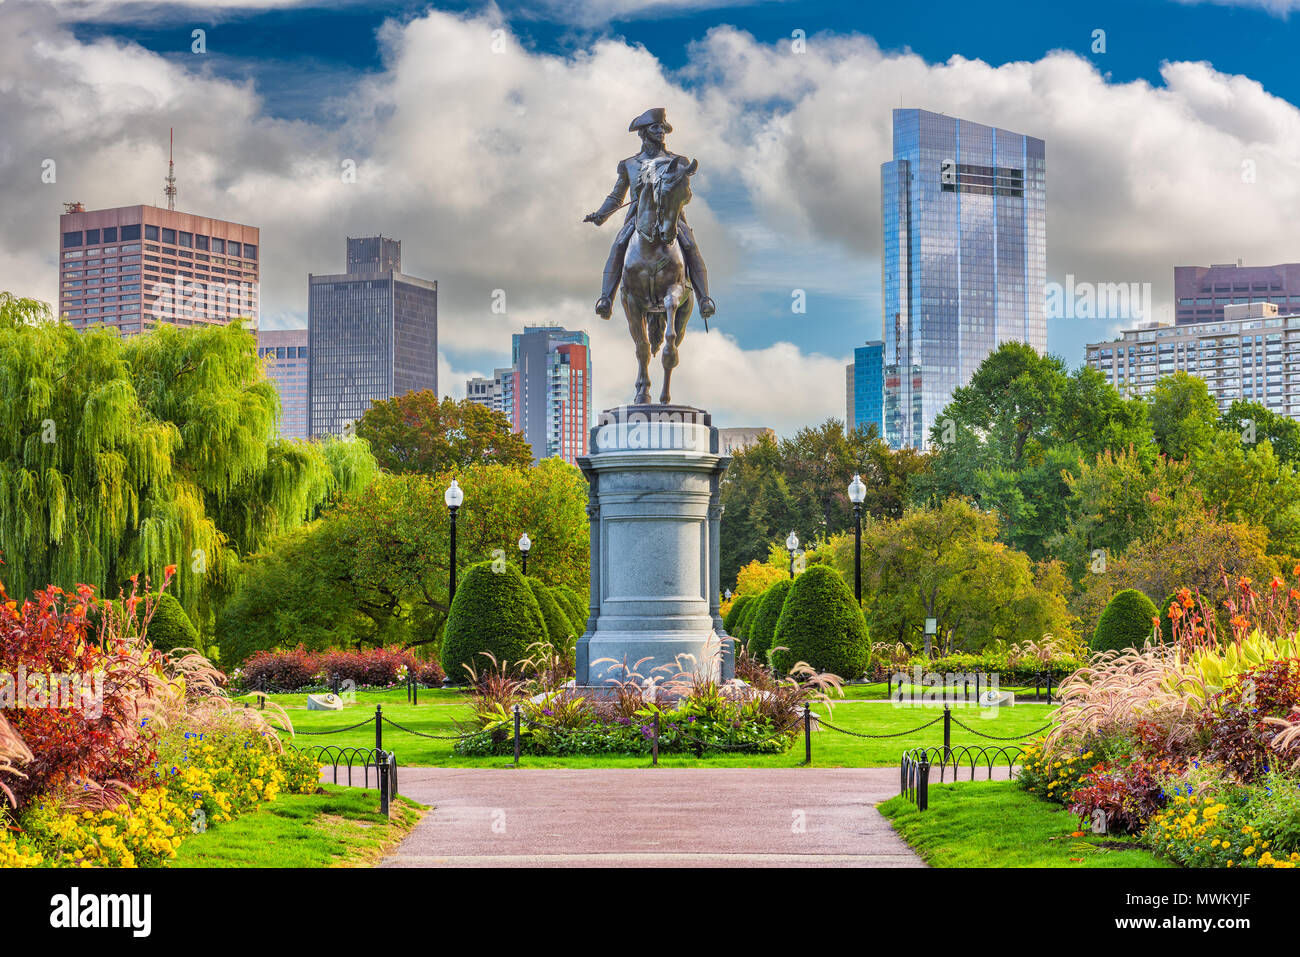 George Washington Monument at Public Garden in Boston, Massachusetts. Stock Photo